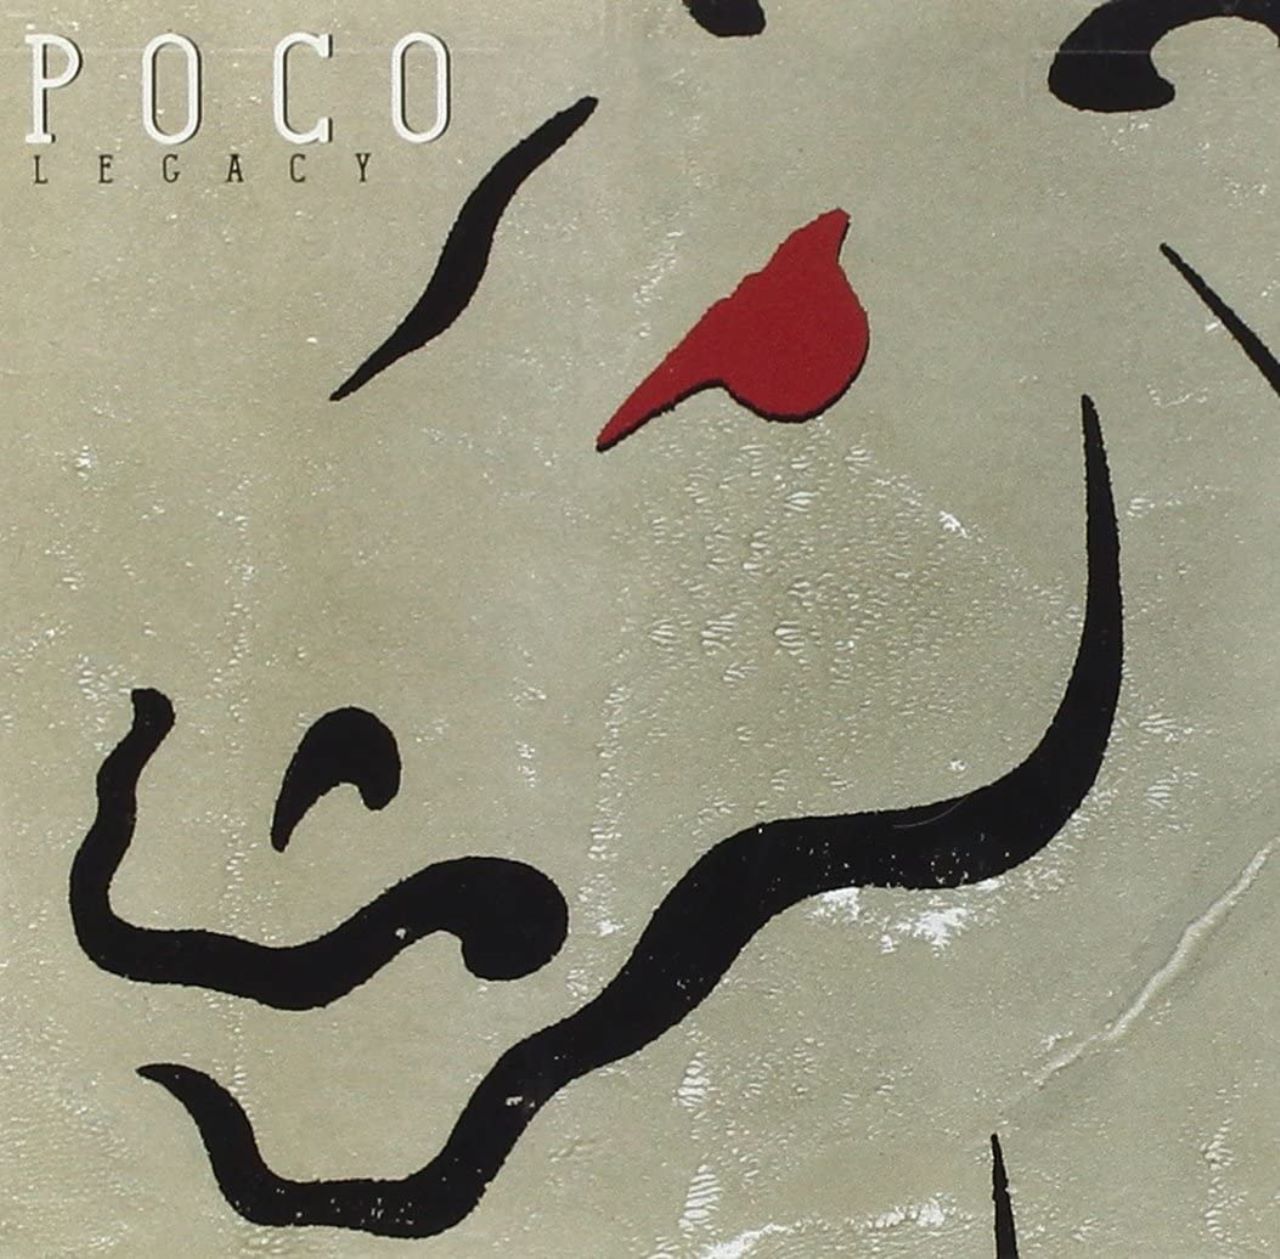 Poco – Legacy cover album